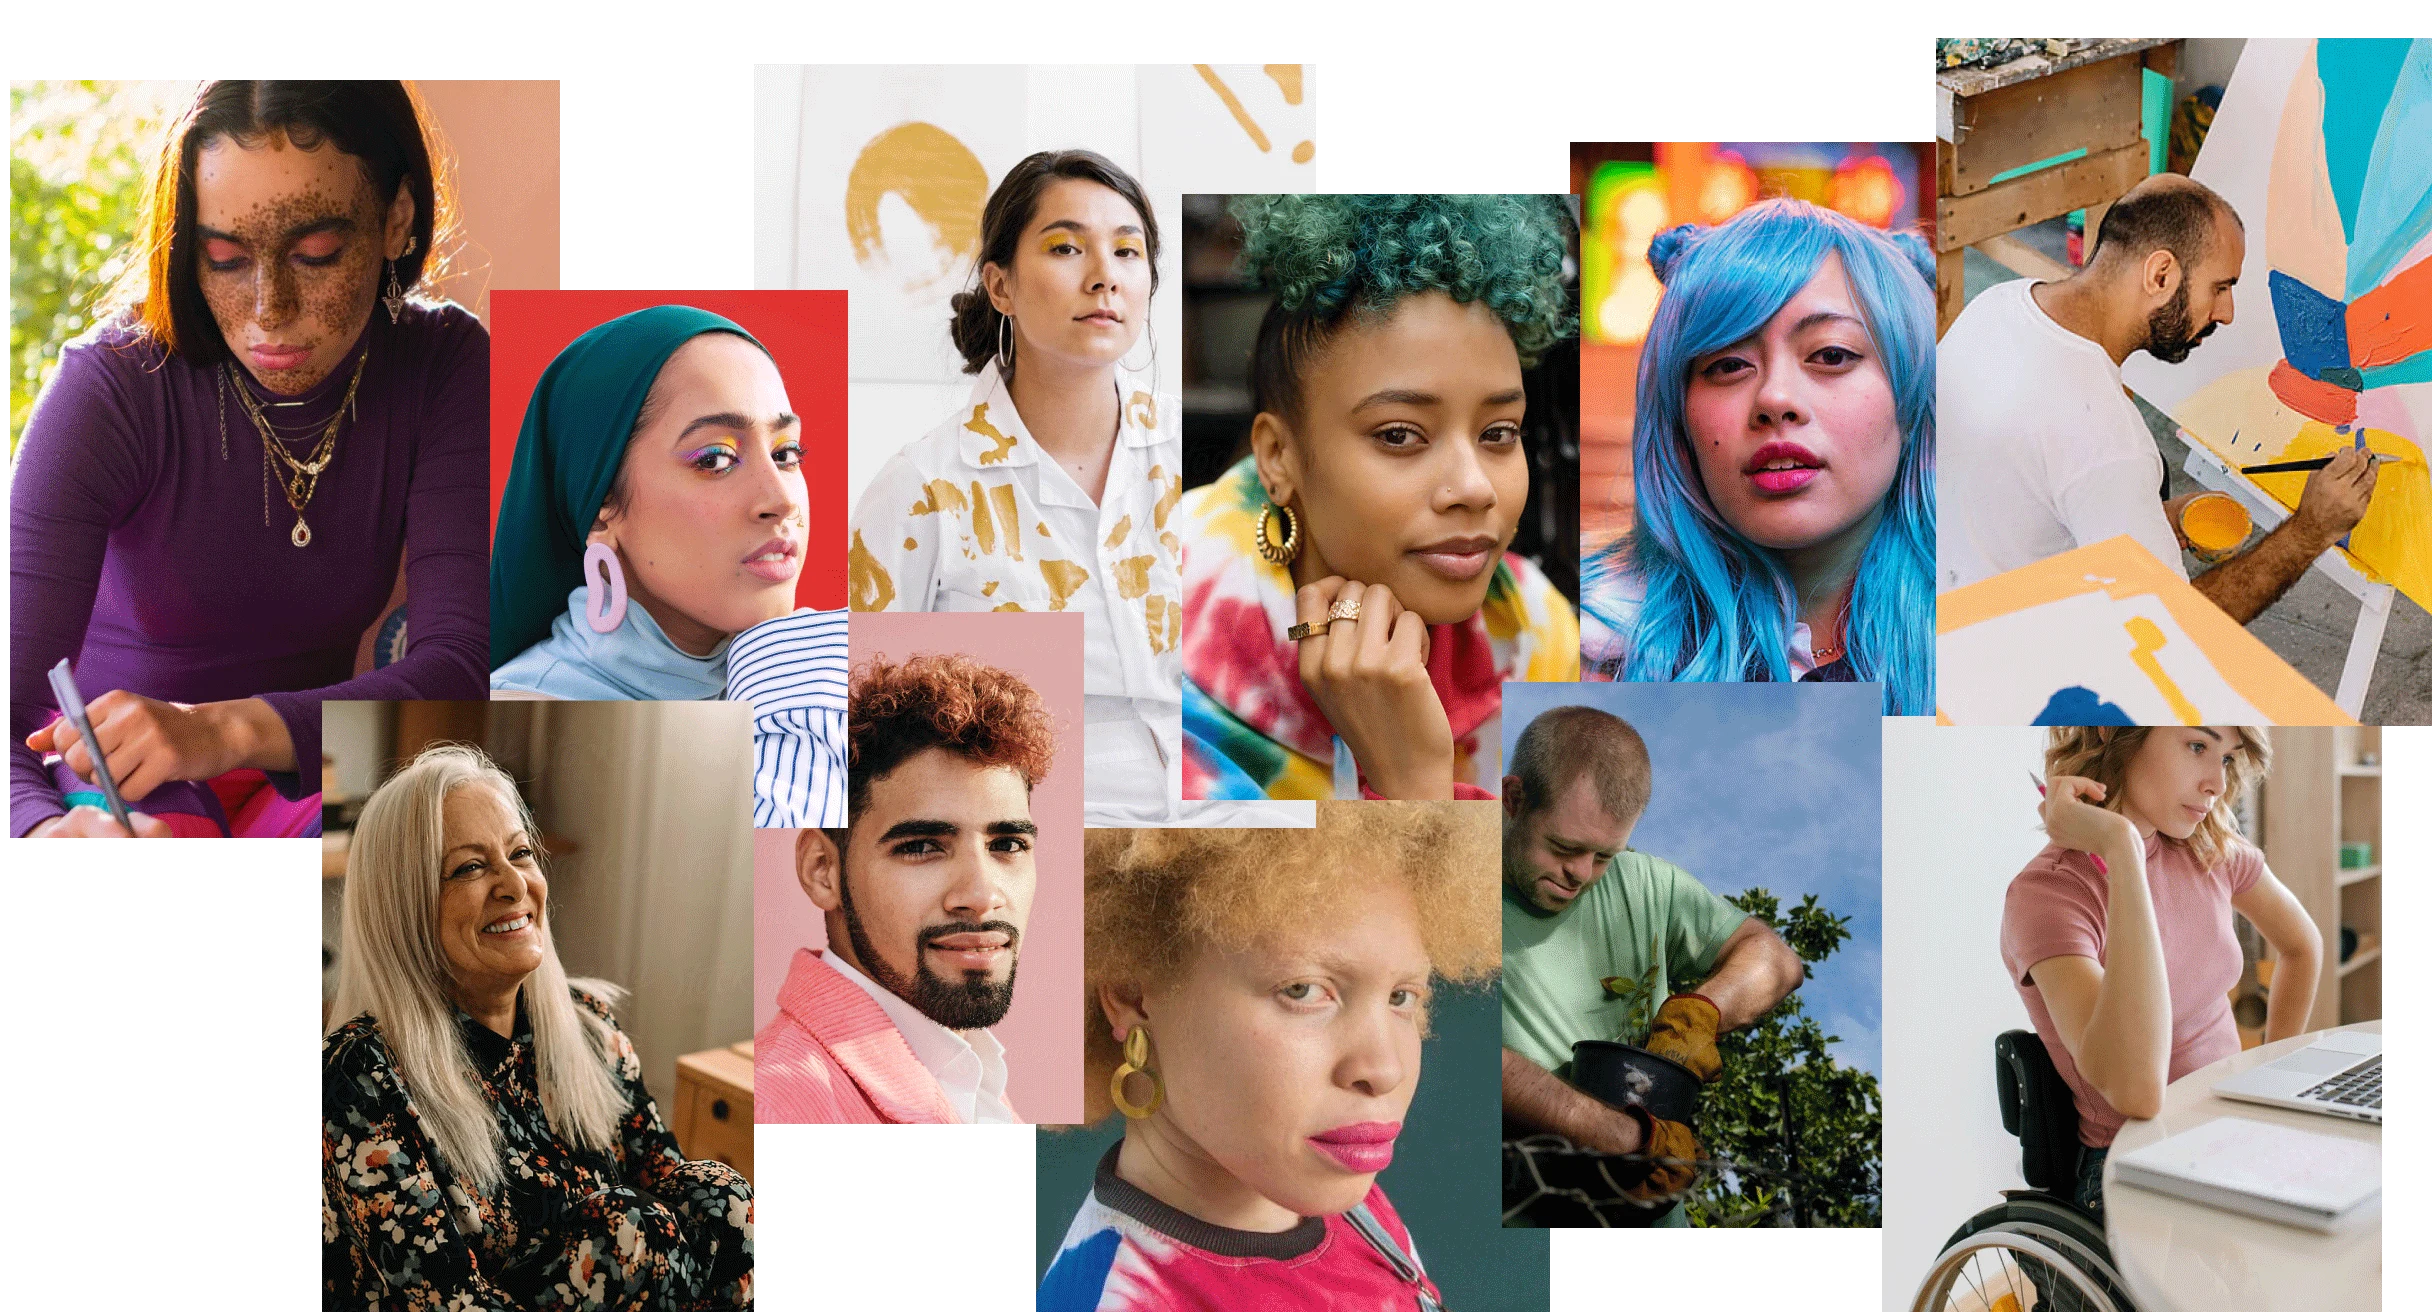 En collage af personer, der afbilleder forskellige racer, etniciteter, køn, aldre og fysiske tilstande